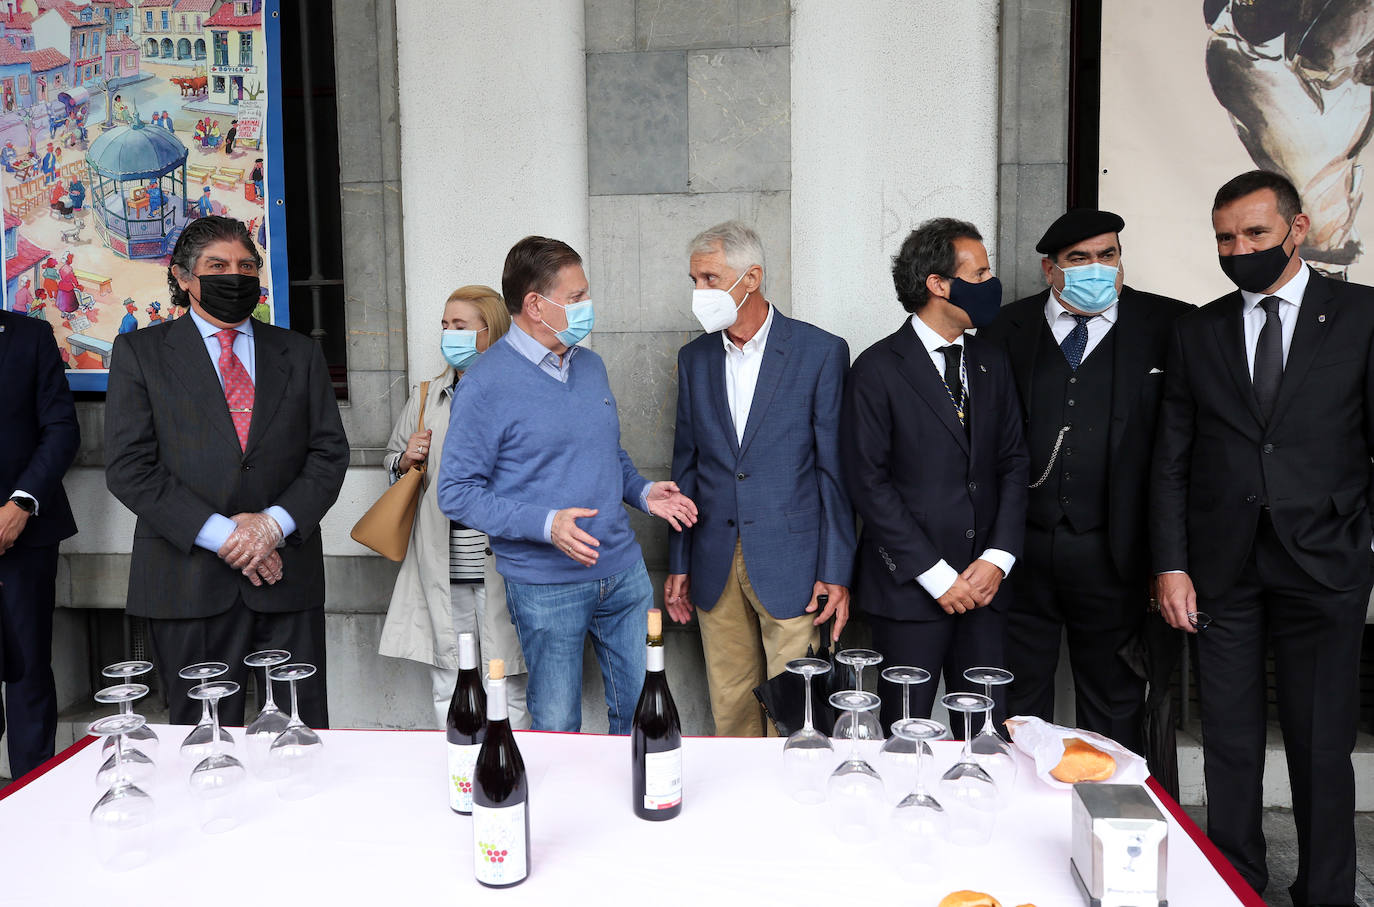 La SOF organiza la tradicional entrega del bollo y la botella de vino con motivo de las fiestas de San Mateo con un «estricto» protocolo de seguridad